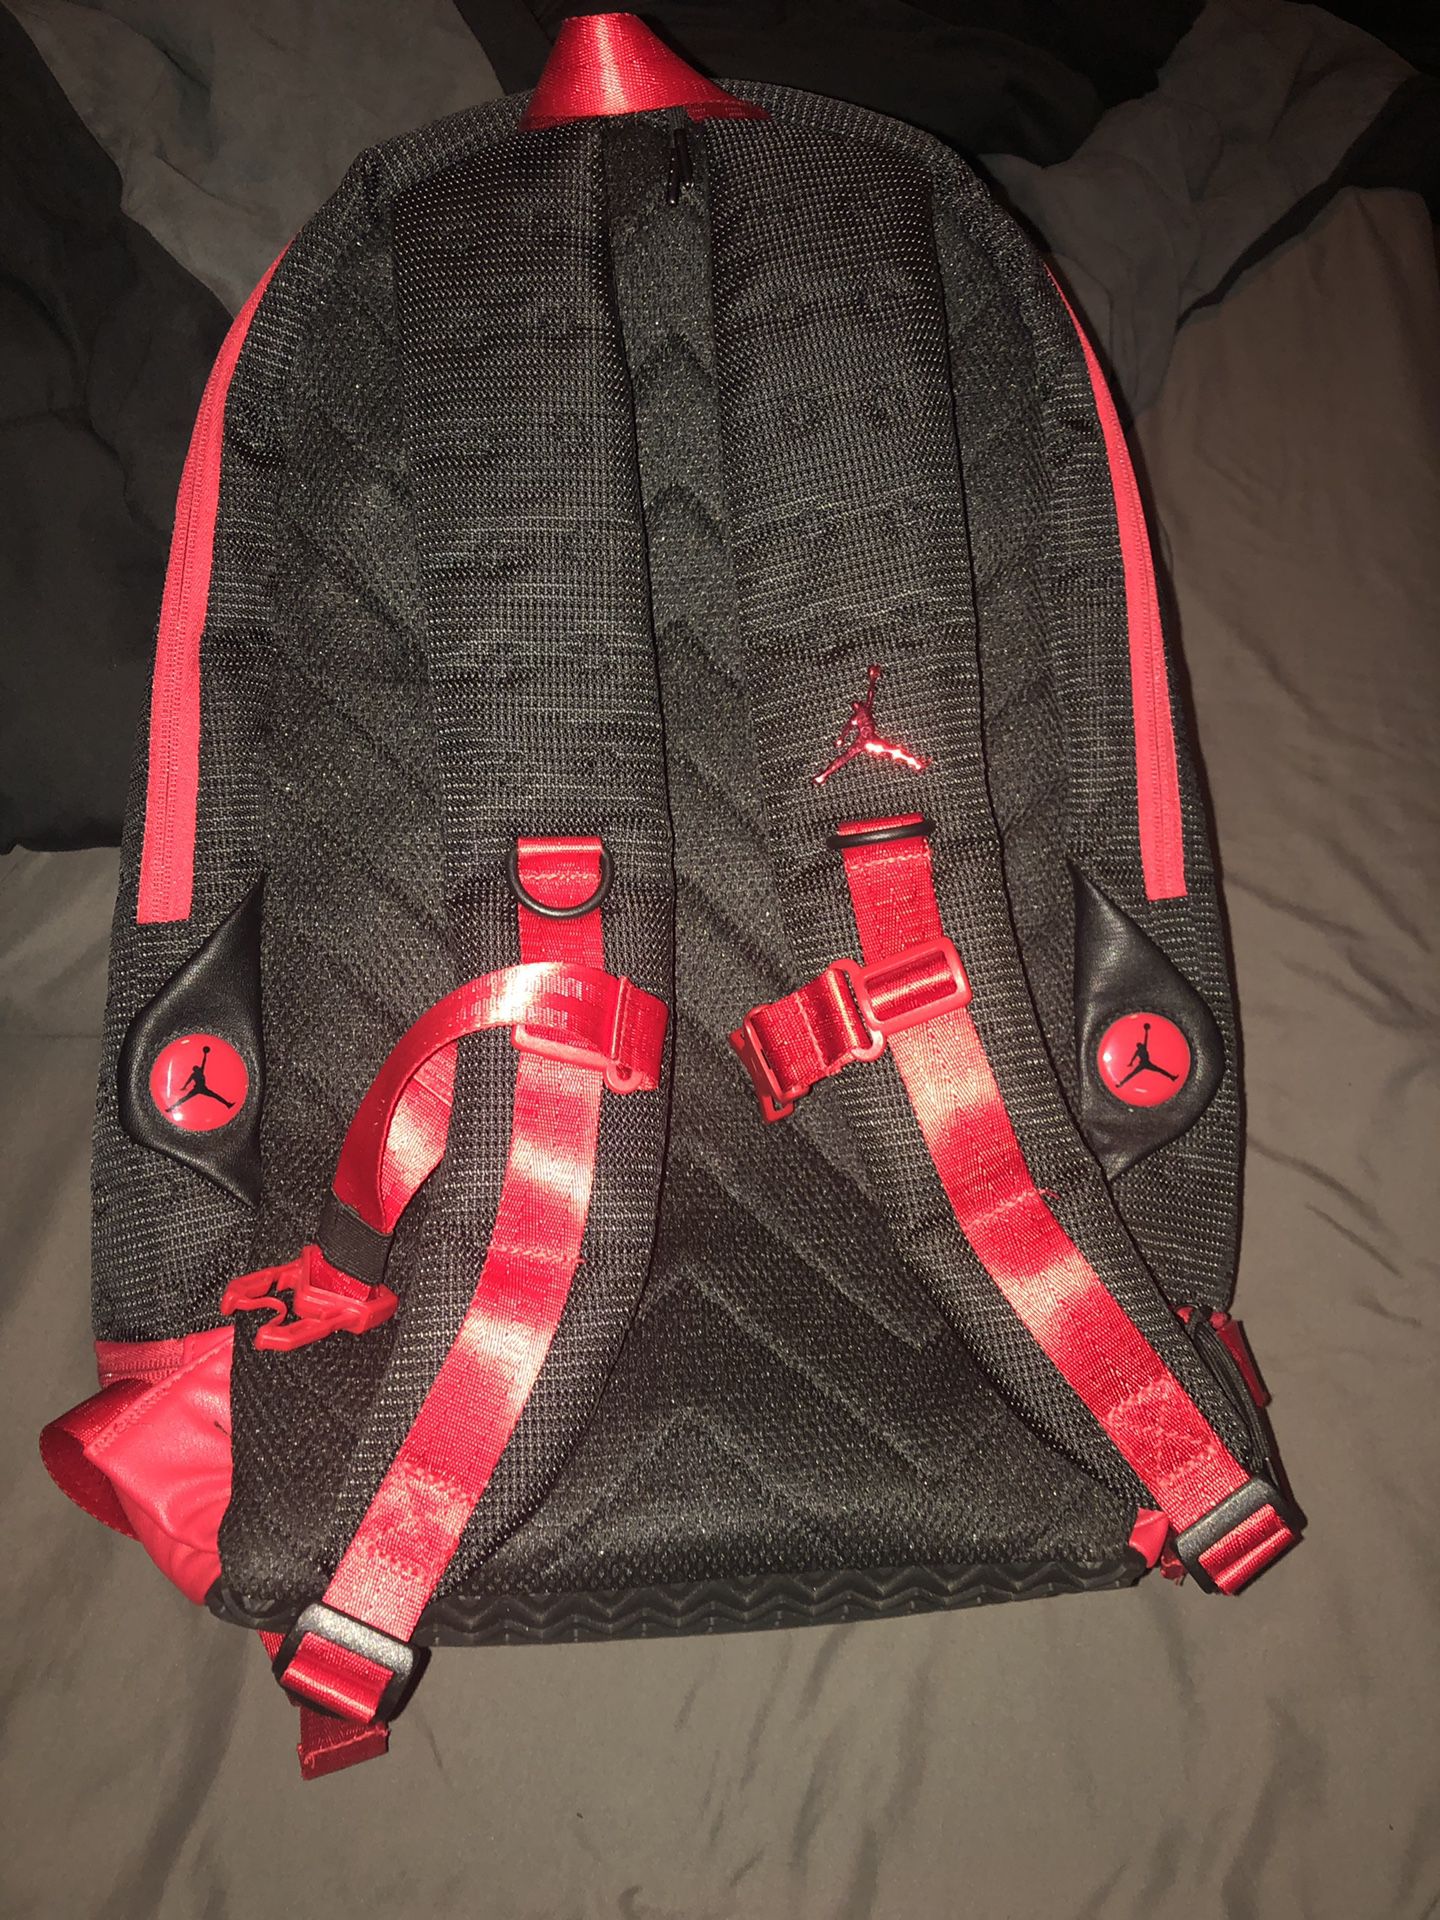 Jordan Backpack - Brand New - Black & Red